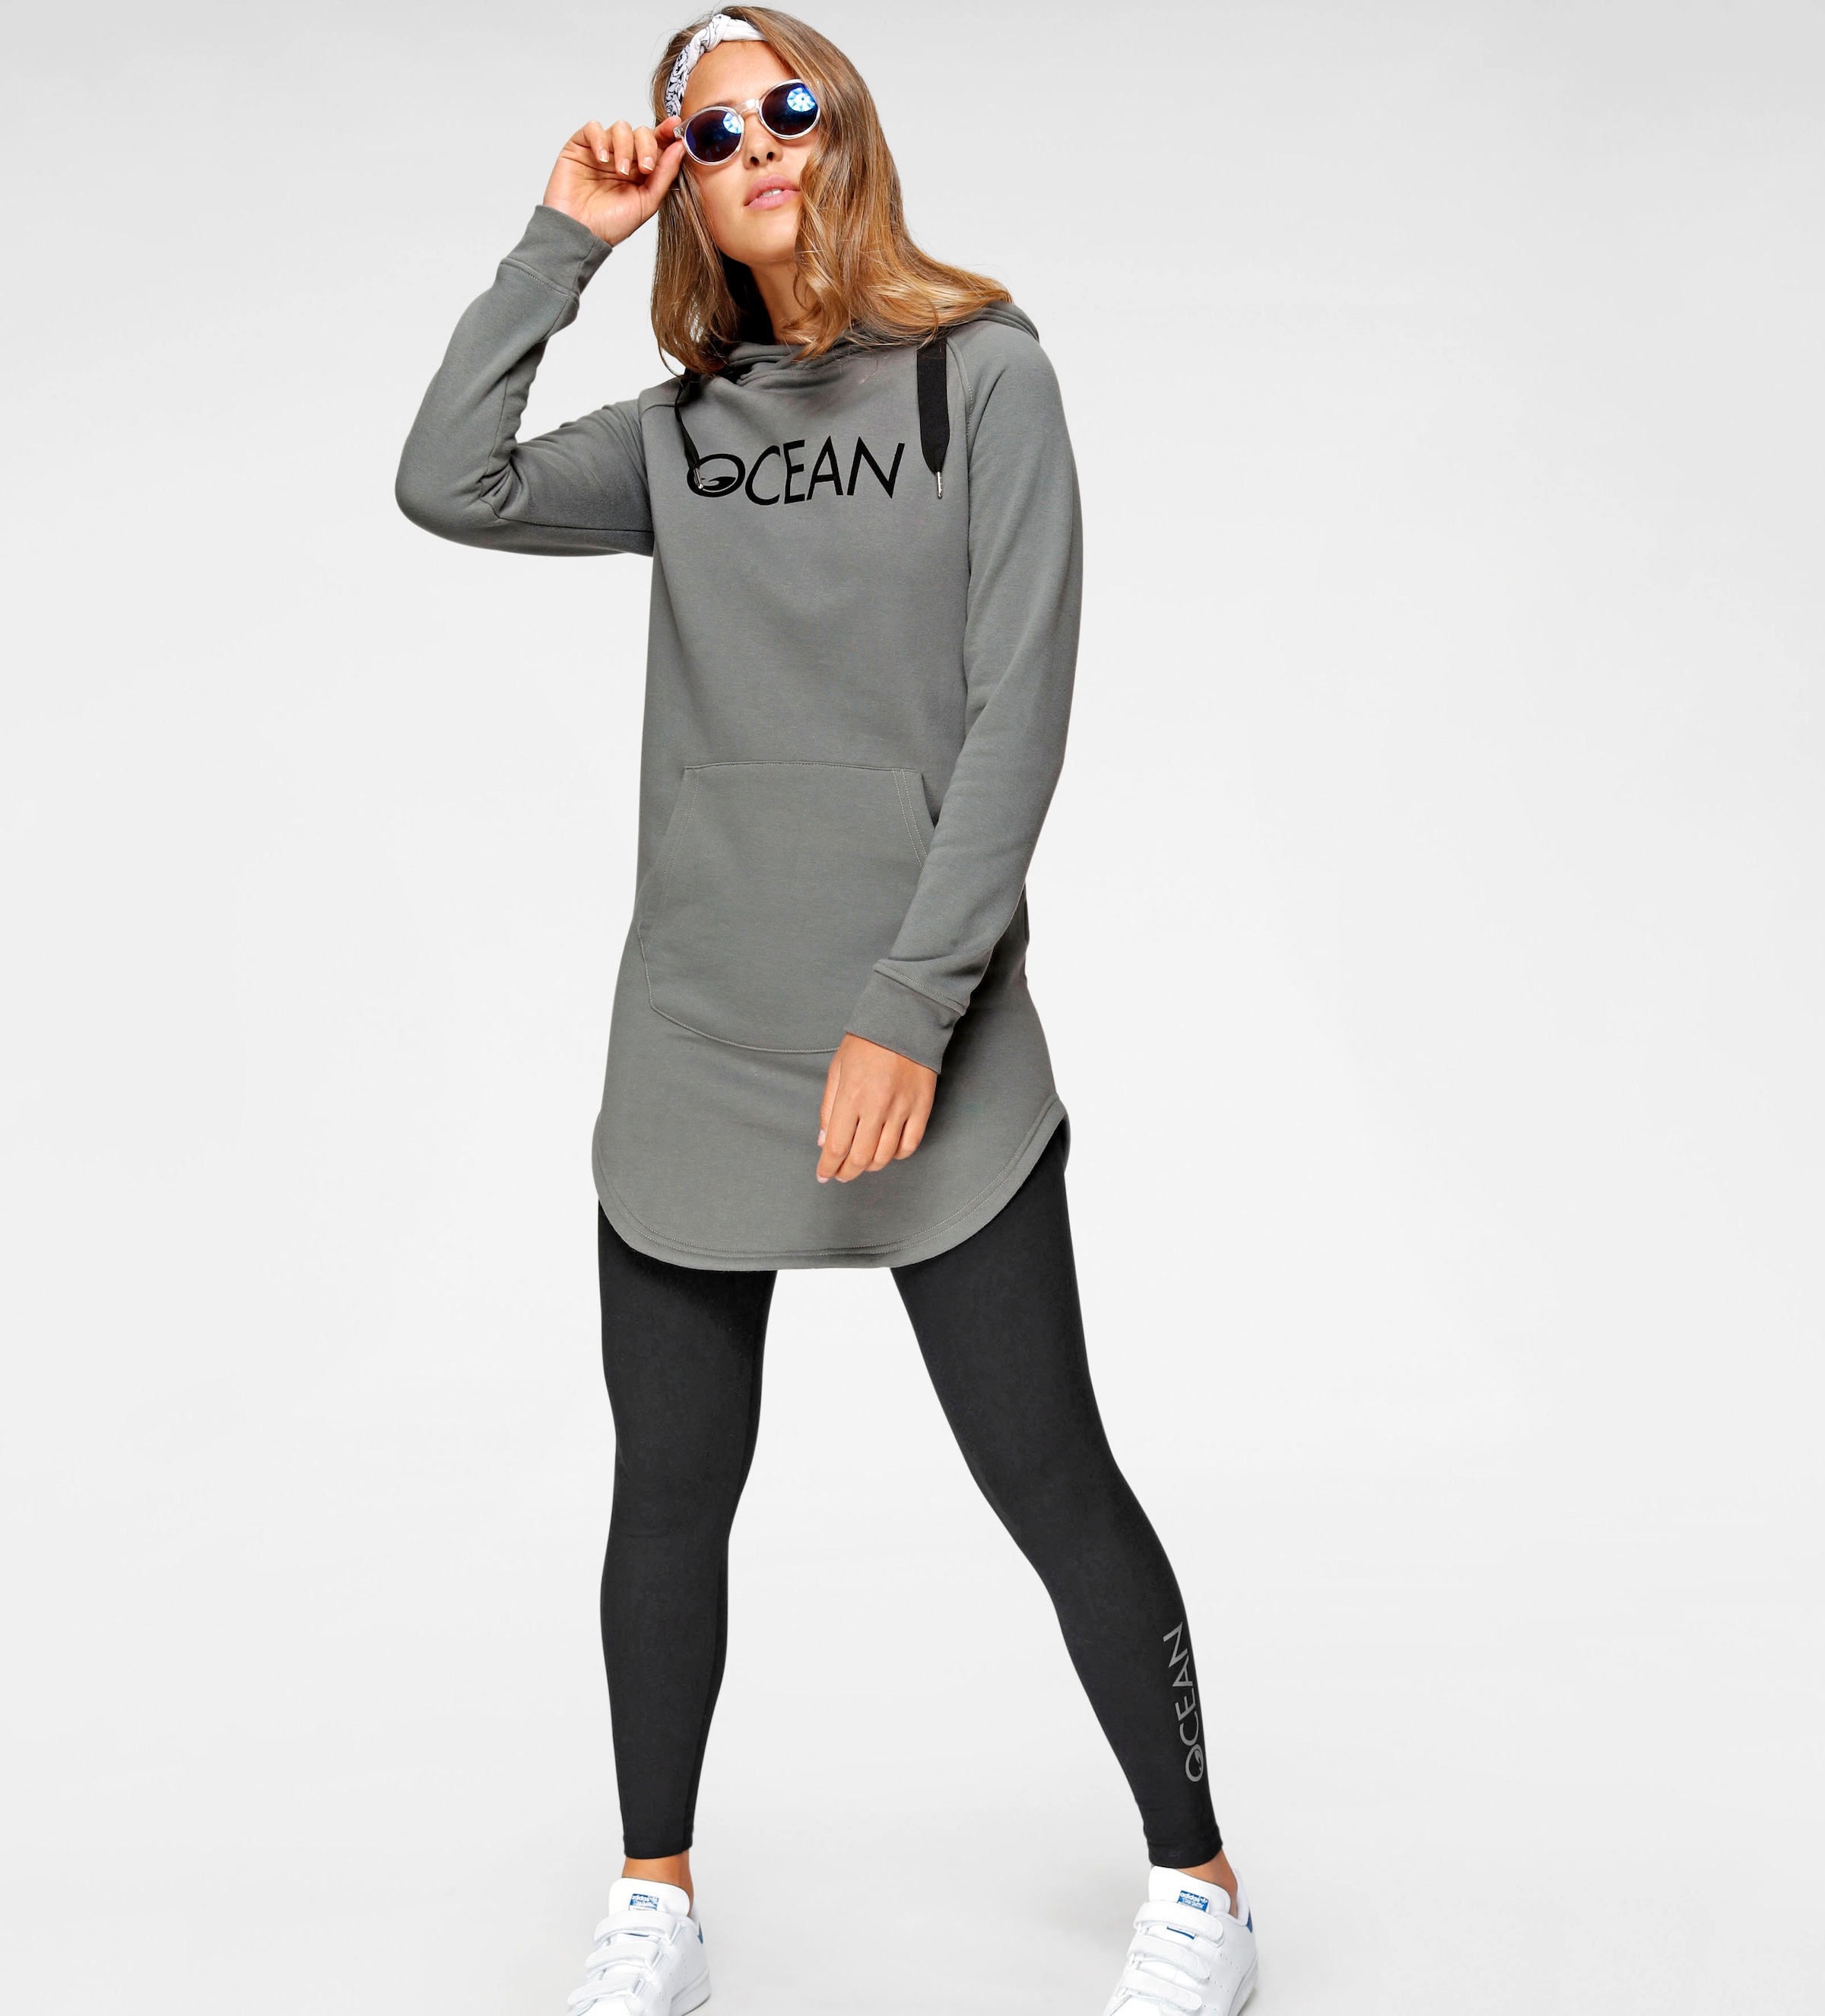 ♕ Ocean Sportswear Ackermann versandkostenfrei Schweiz bei jetzt shoppen